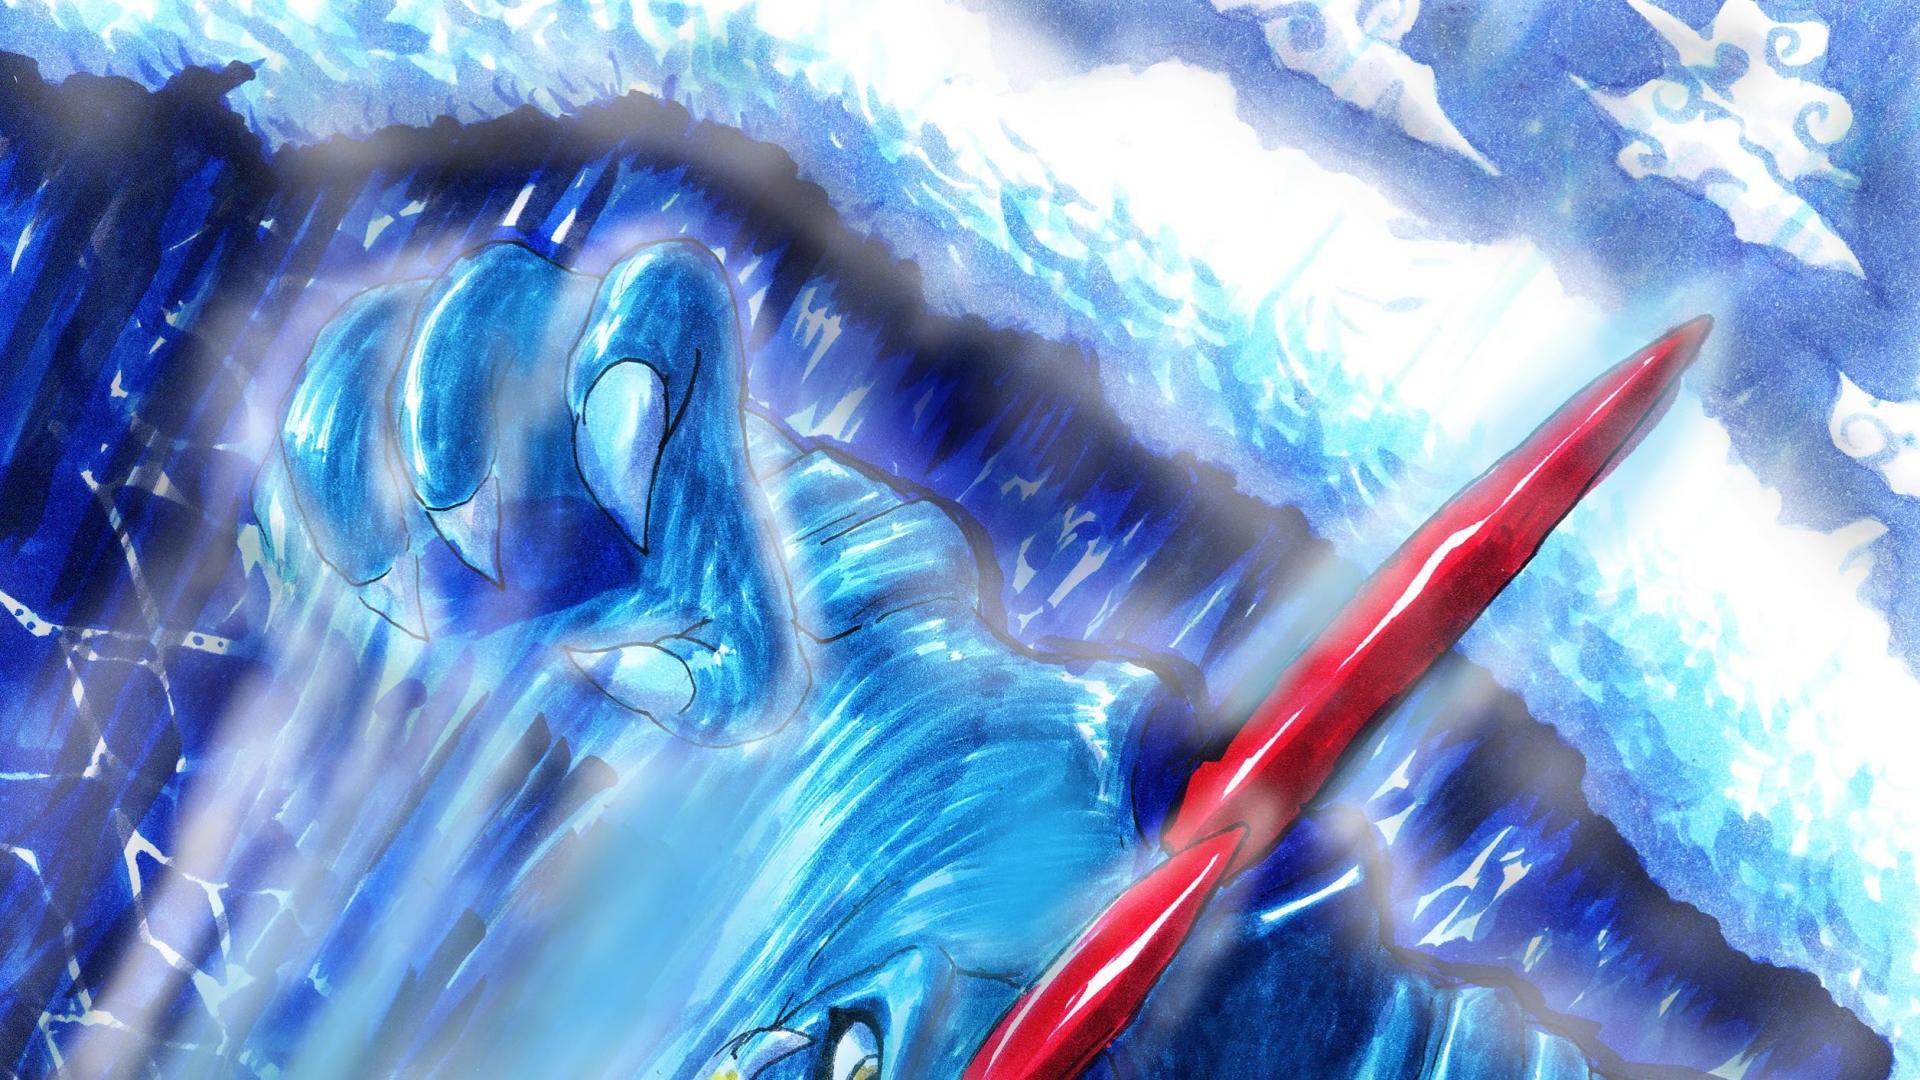 Water Pokemon Surfing Deviantart Artwork Waterfalls